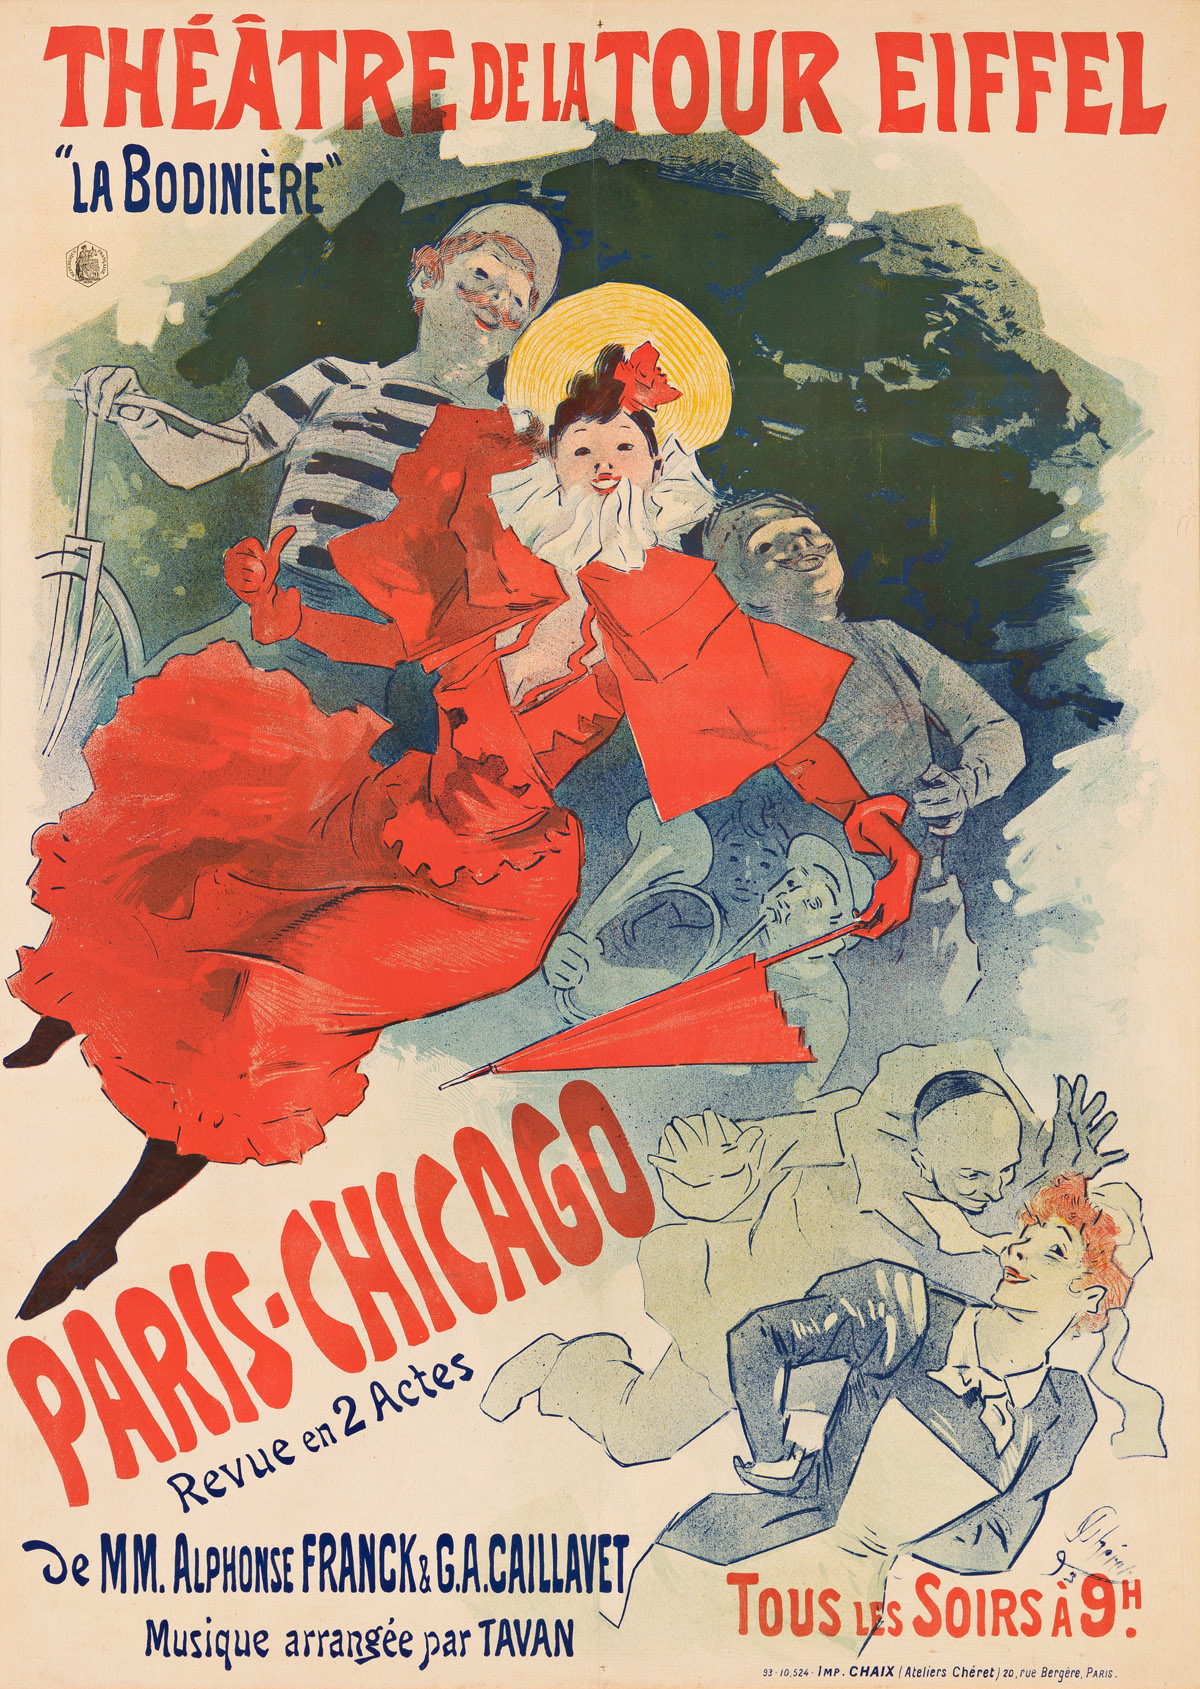 JULES CHÉRET (1836-1932).  THÉÂTRE DE LA TOUR EIFFEL / PARIS - CHICAGO. 1893. 47½x34½ inches, 120½x87½ cm. Chaix Paris.